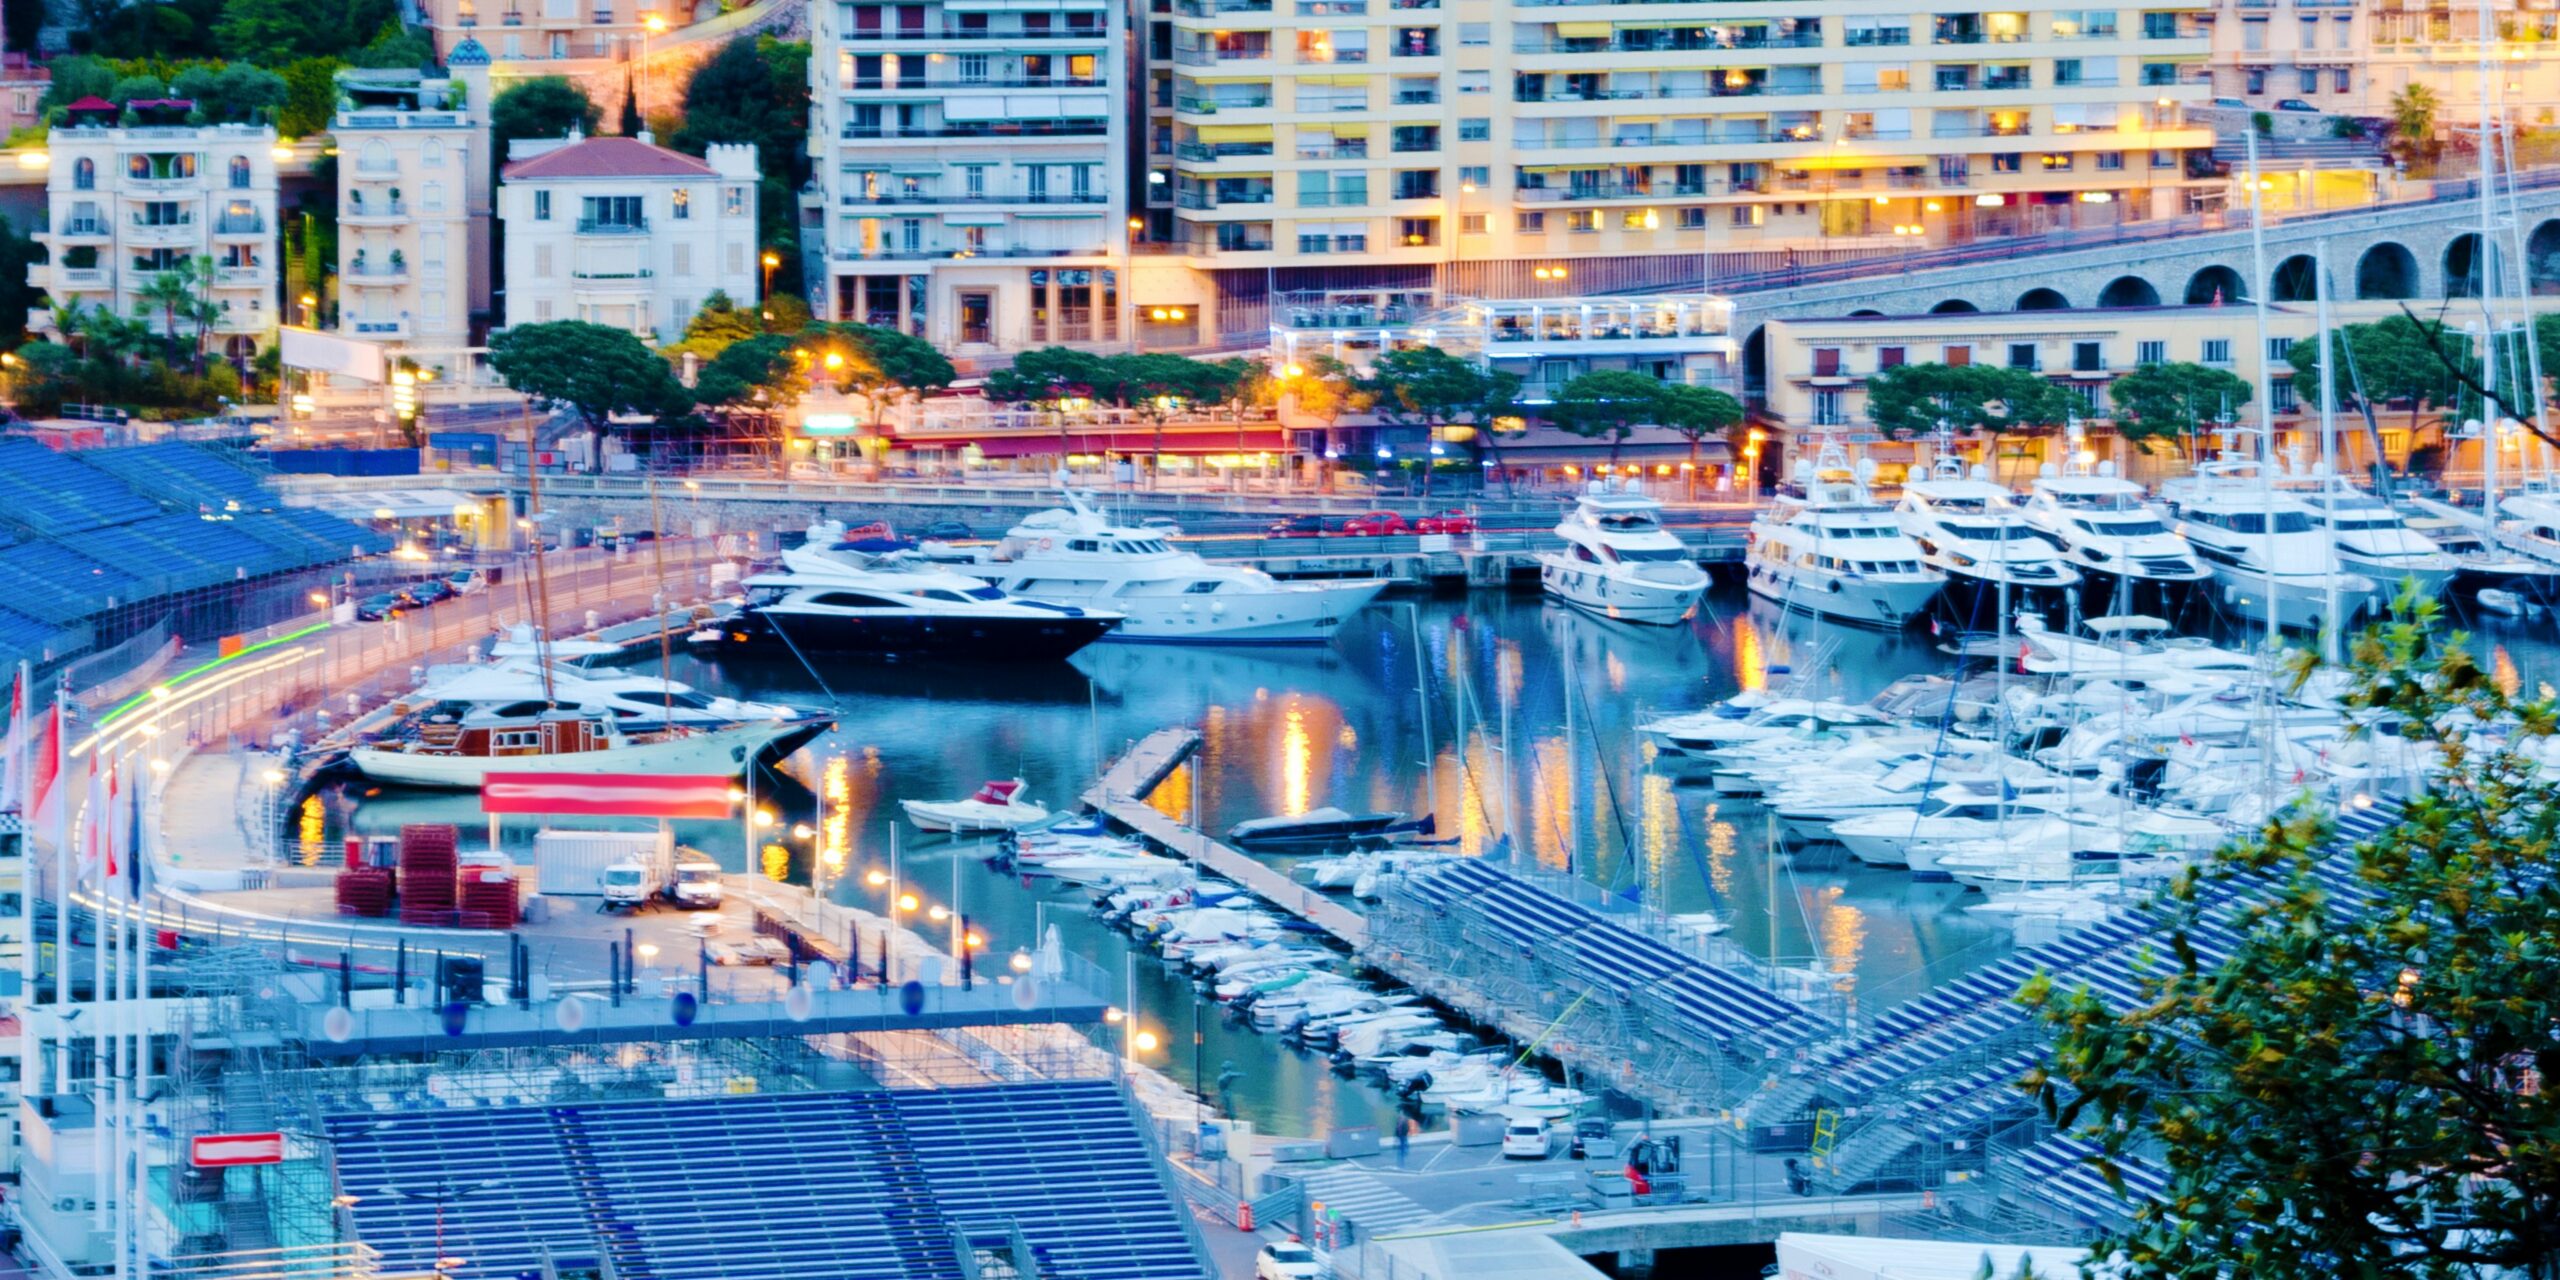 Grand Prix de Formule 1 - Principauté de Monaco